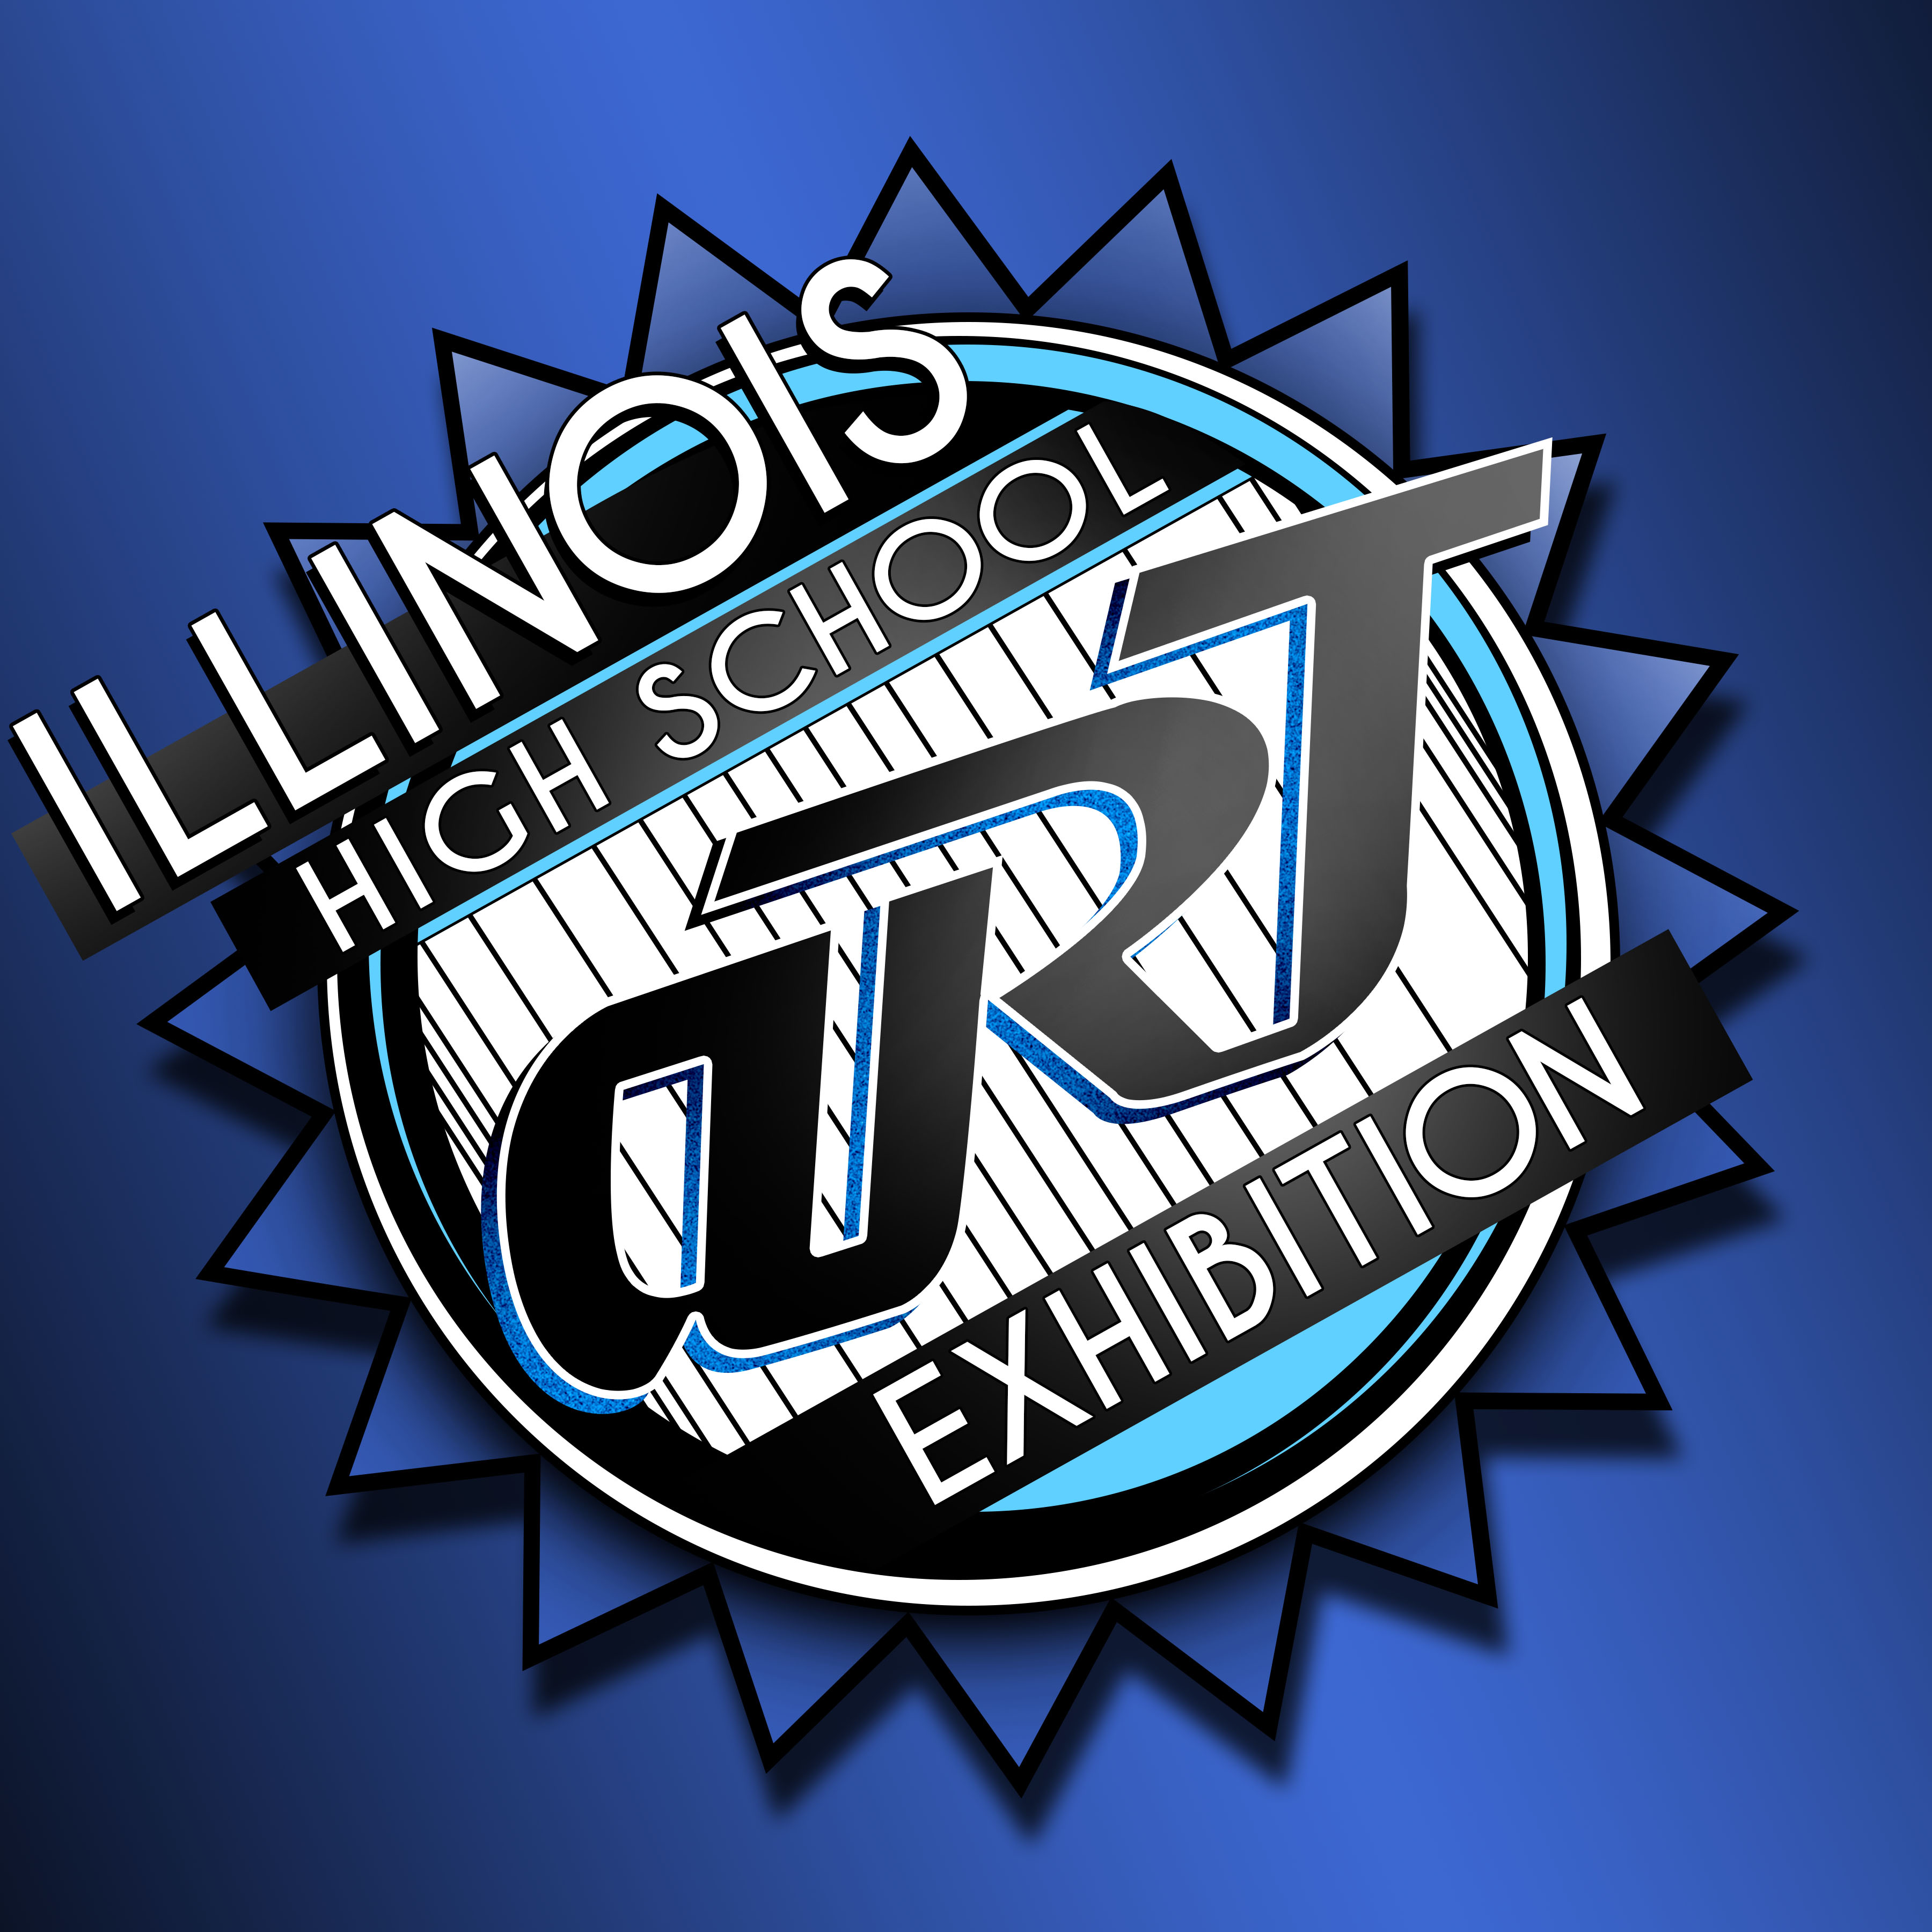 Logo Design for IHSAE show